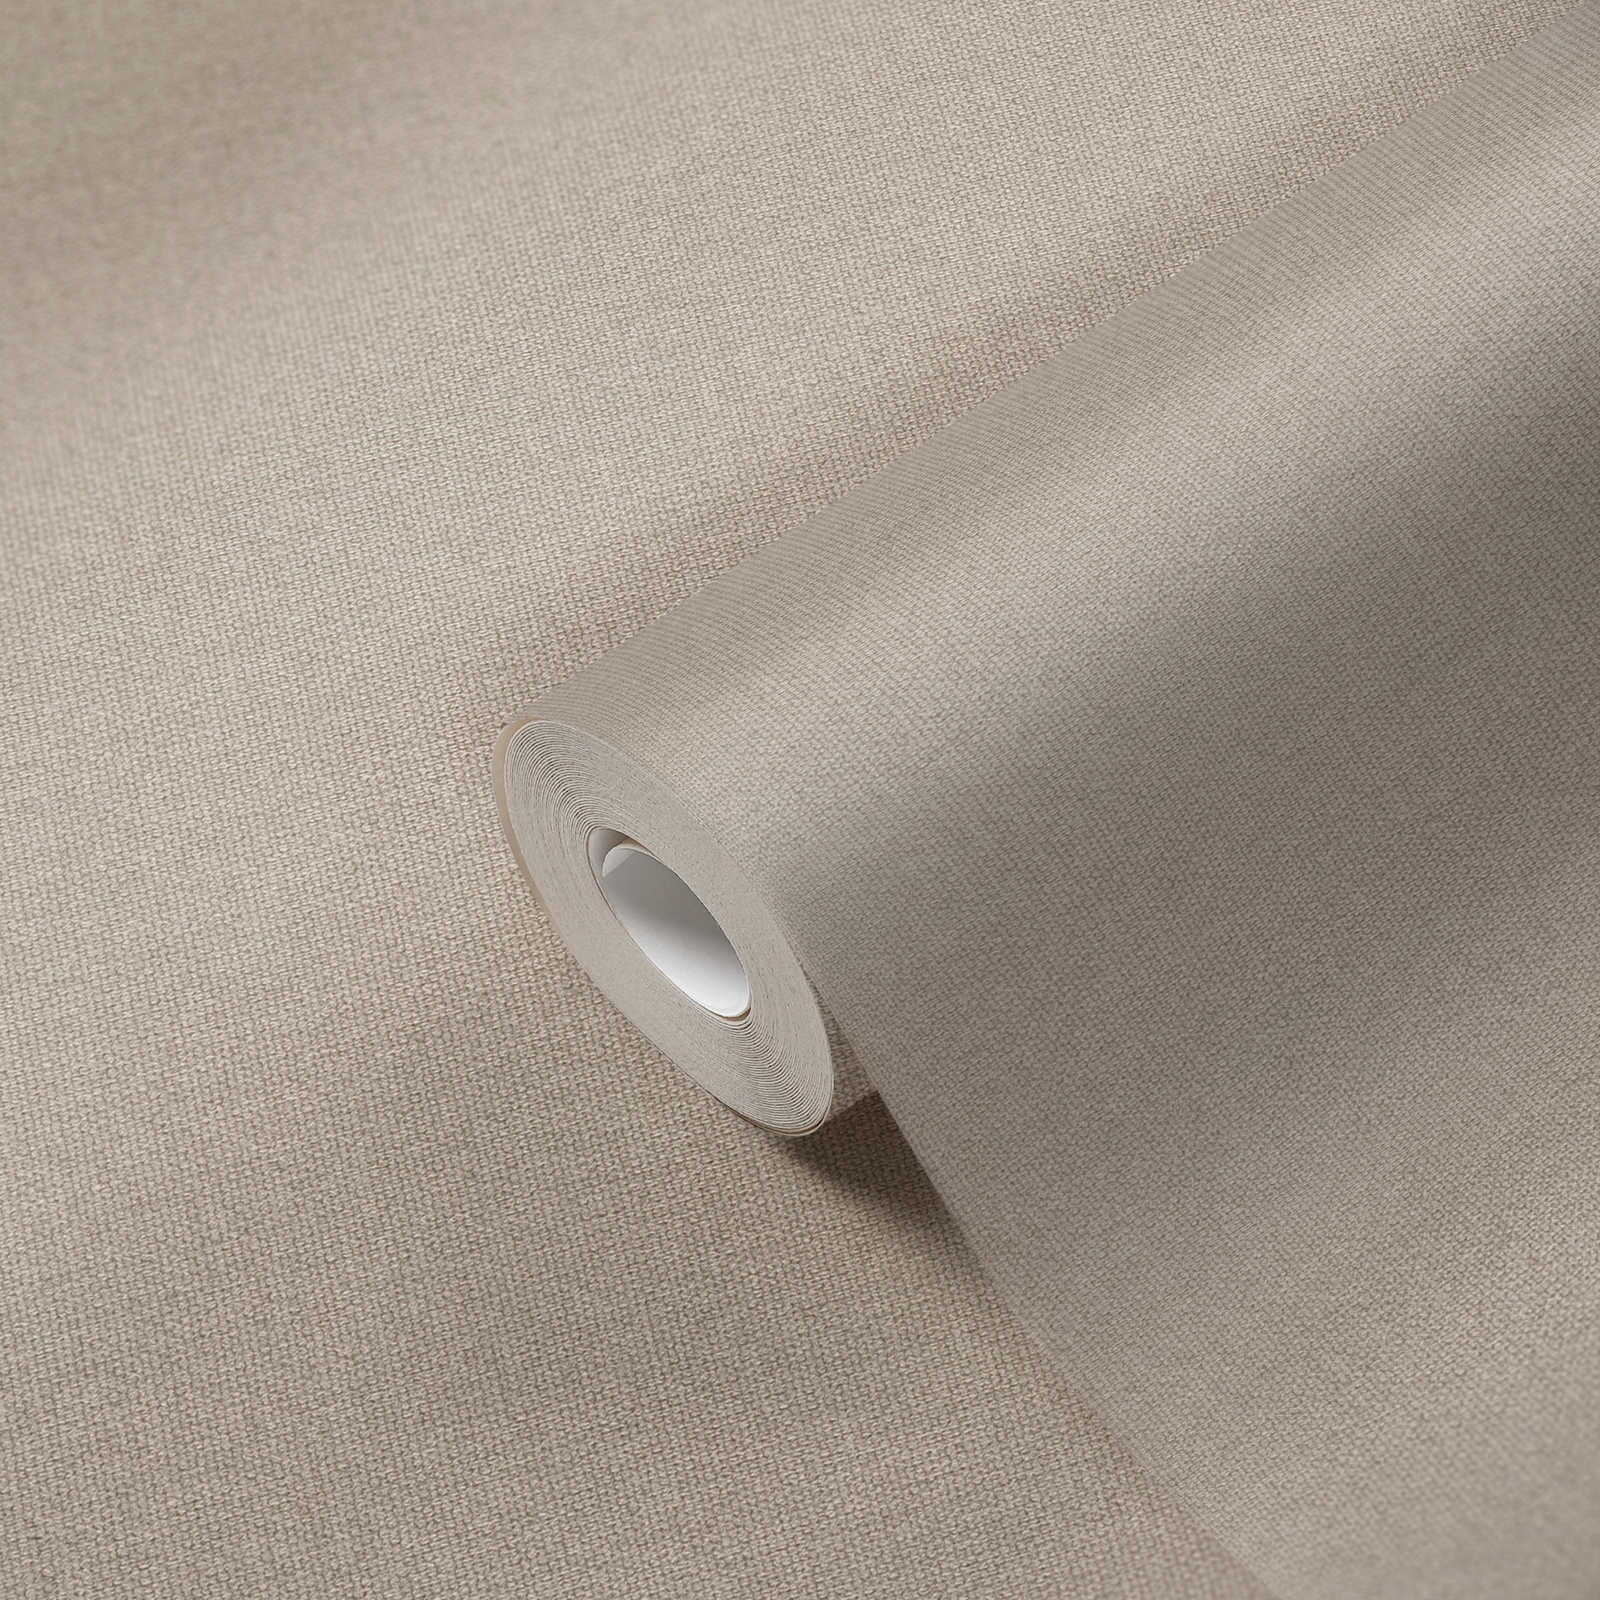             Papel pintado de aspecto de lino con superficie texturizada, liso - Beige, Gris
        